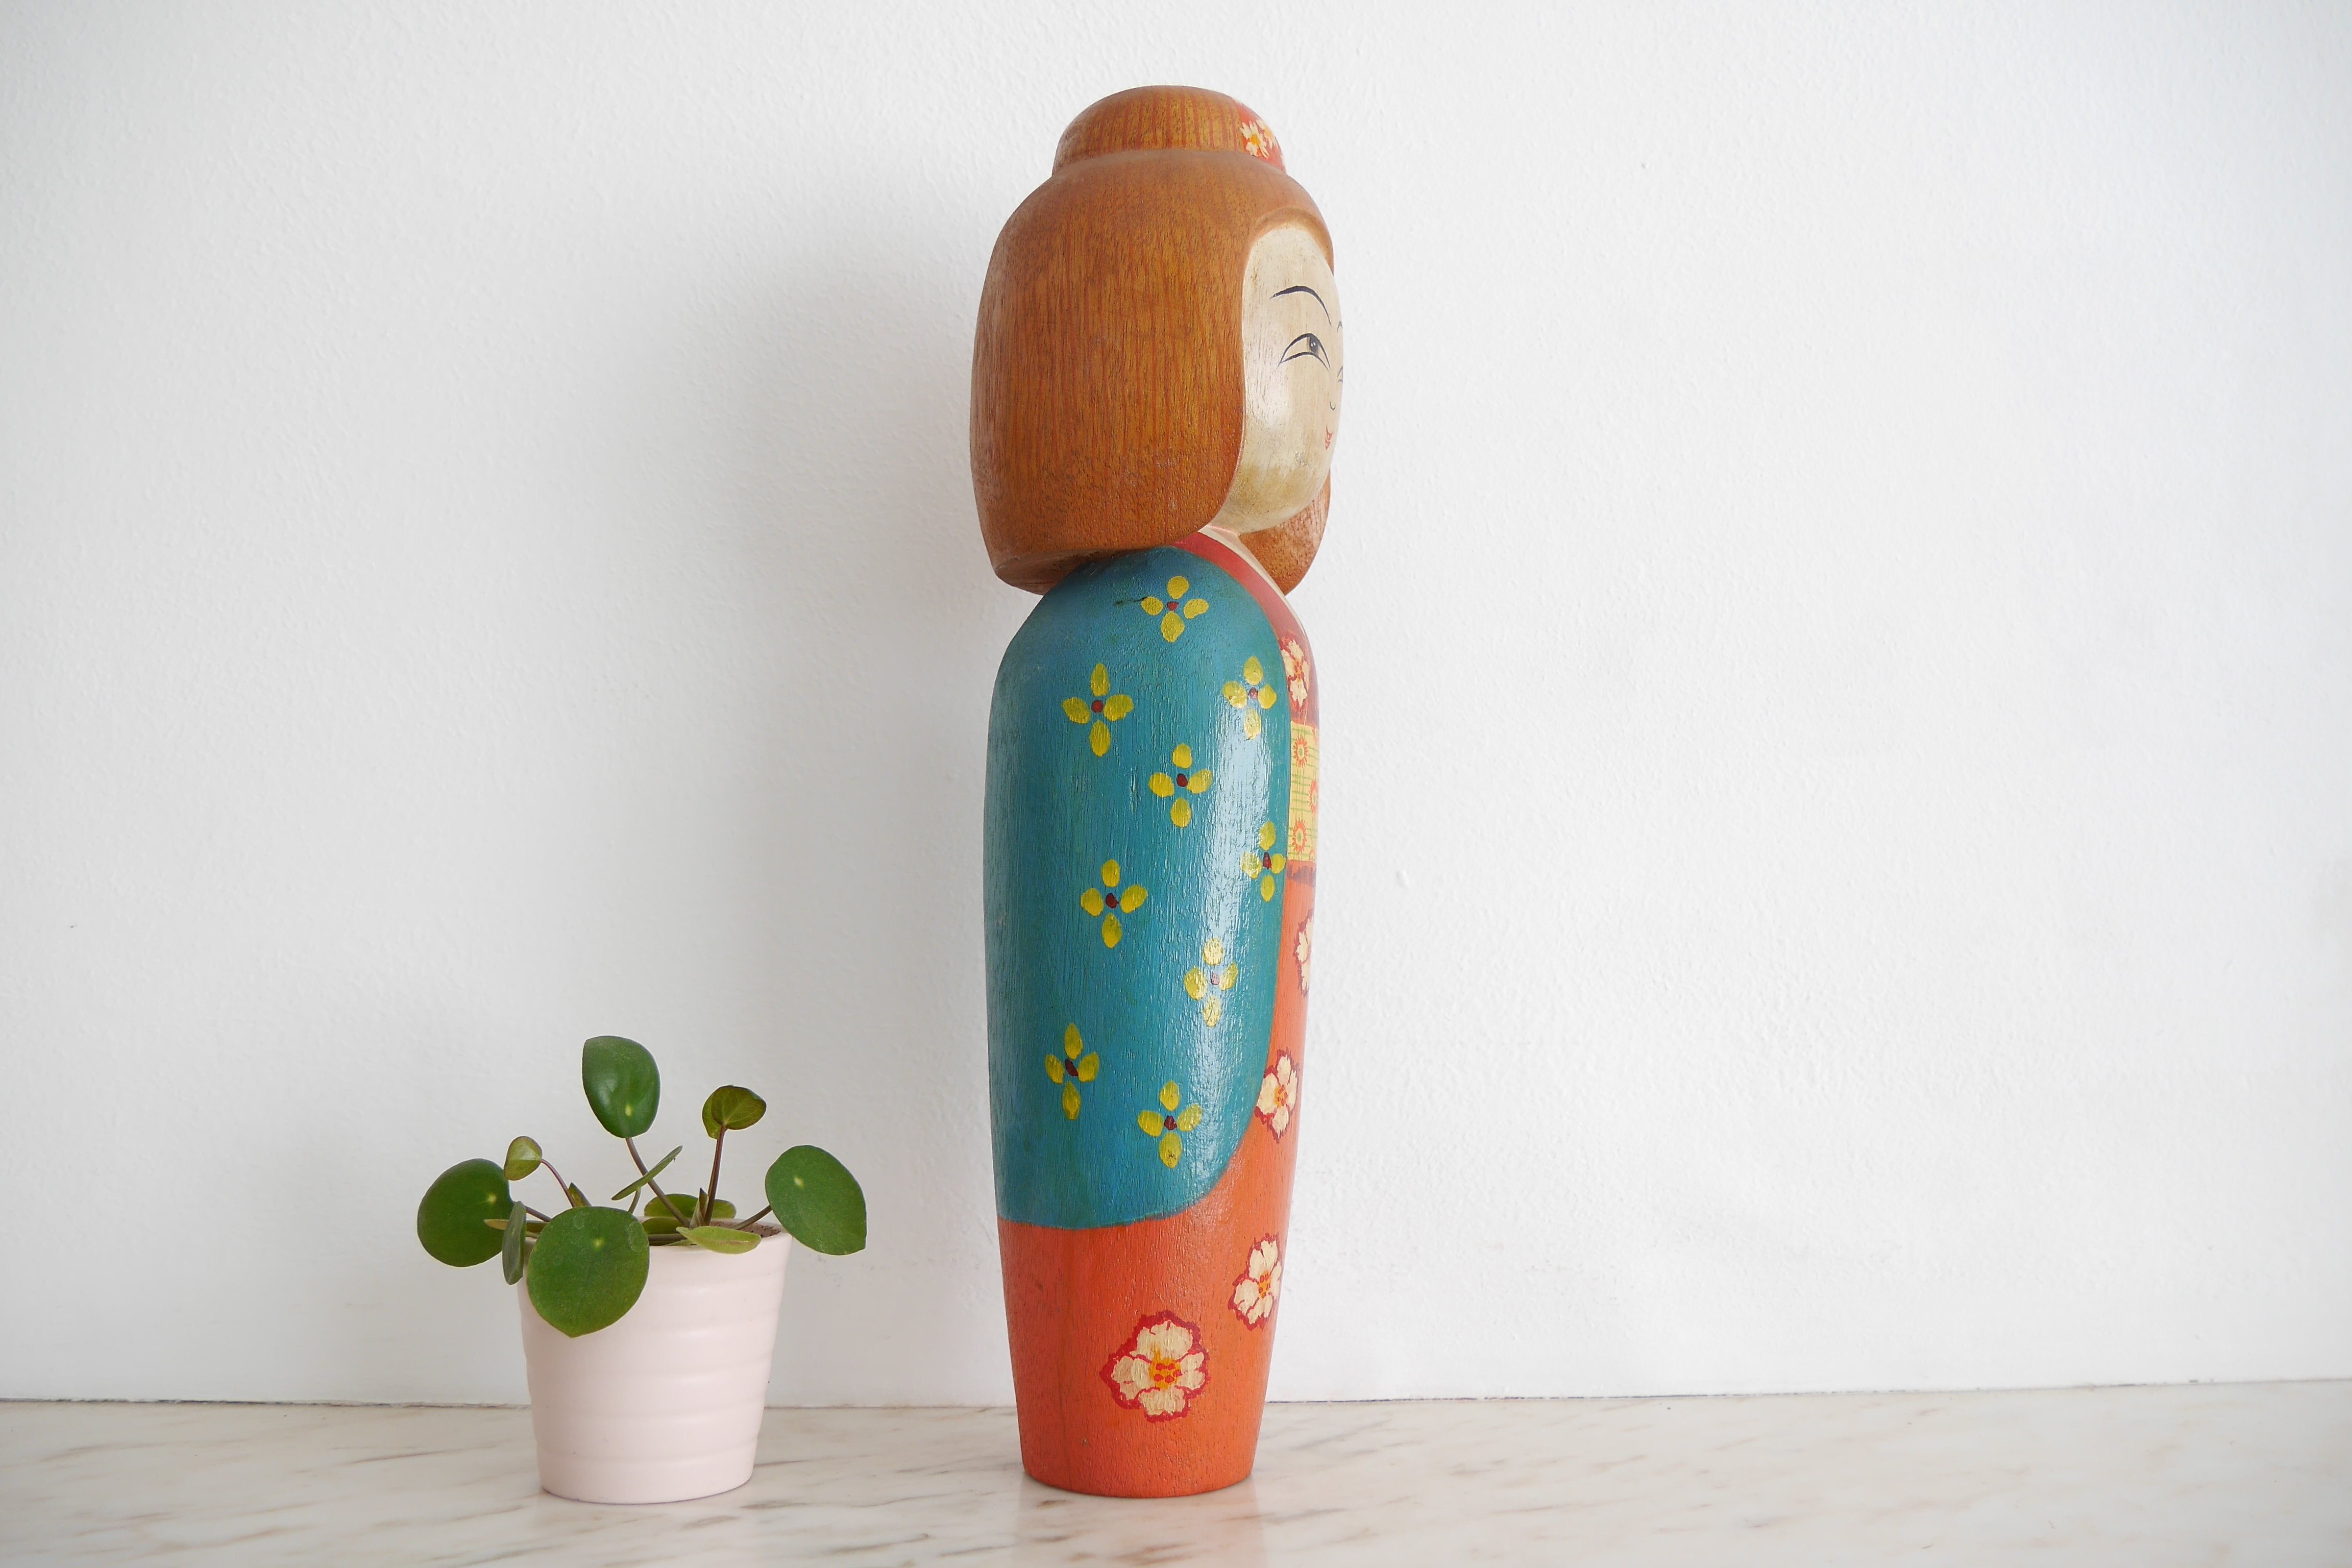 Kokeshi Inspired Doll | 35 cm